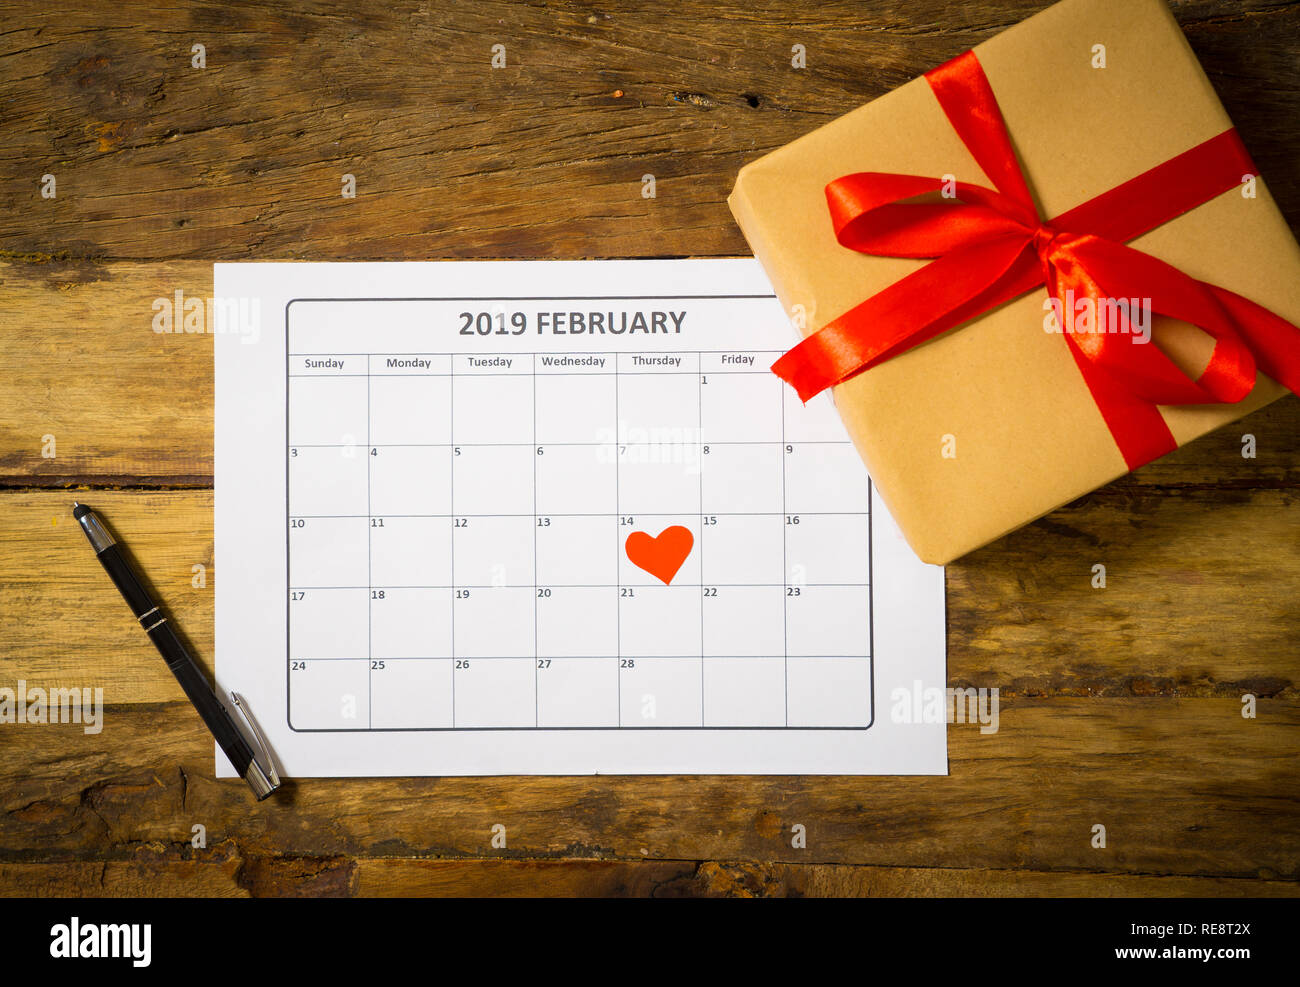 Image conceptuelle d'un calendrier février 2019 coeur sur le 14 ème et le présent gift wrapped with red ribbon sur table vintage rustique prêt pour saint Valen Banque D'Images